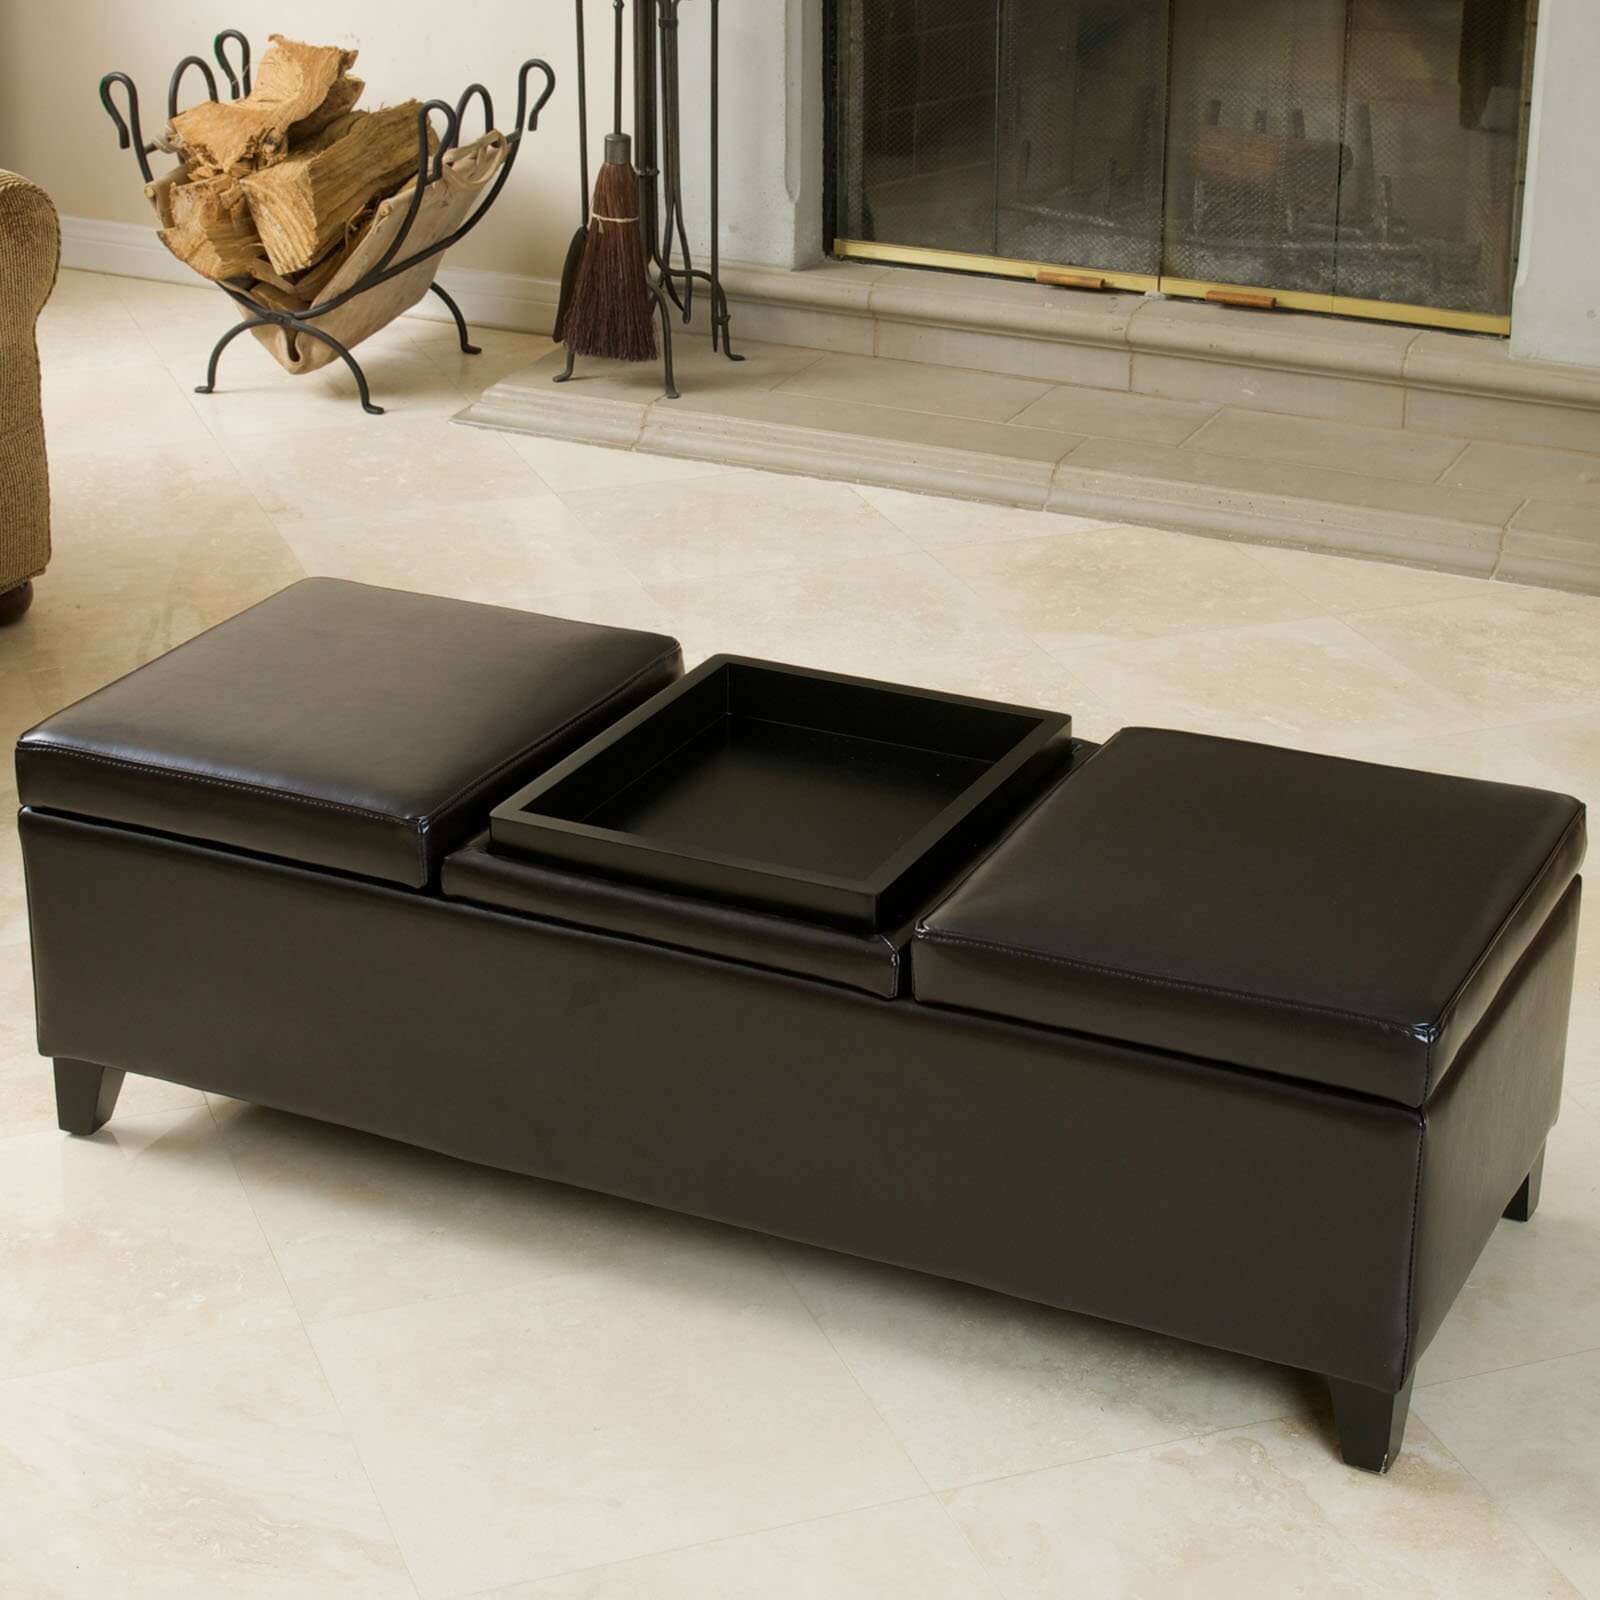 这款三顶凳凳的特点是可翻转的托盘桌中心坐垫，存储空间隐藏在两个外部铰链皮革坐垫之下。来自Best Selling Home Decor Furniture LLC。